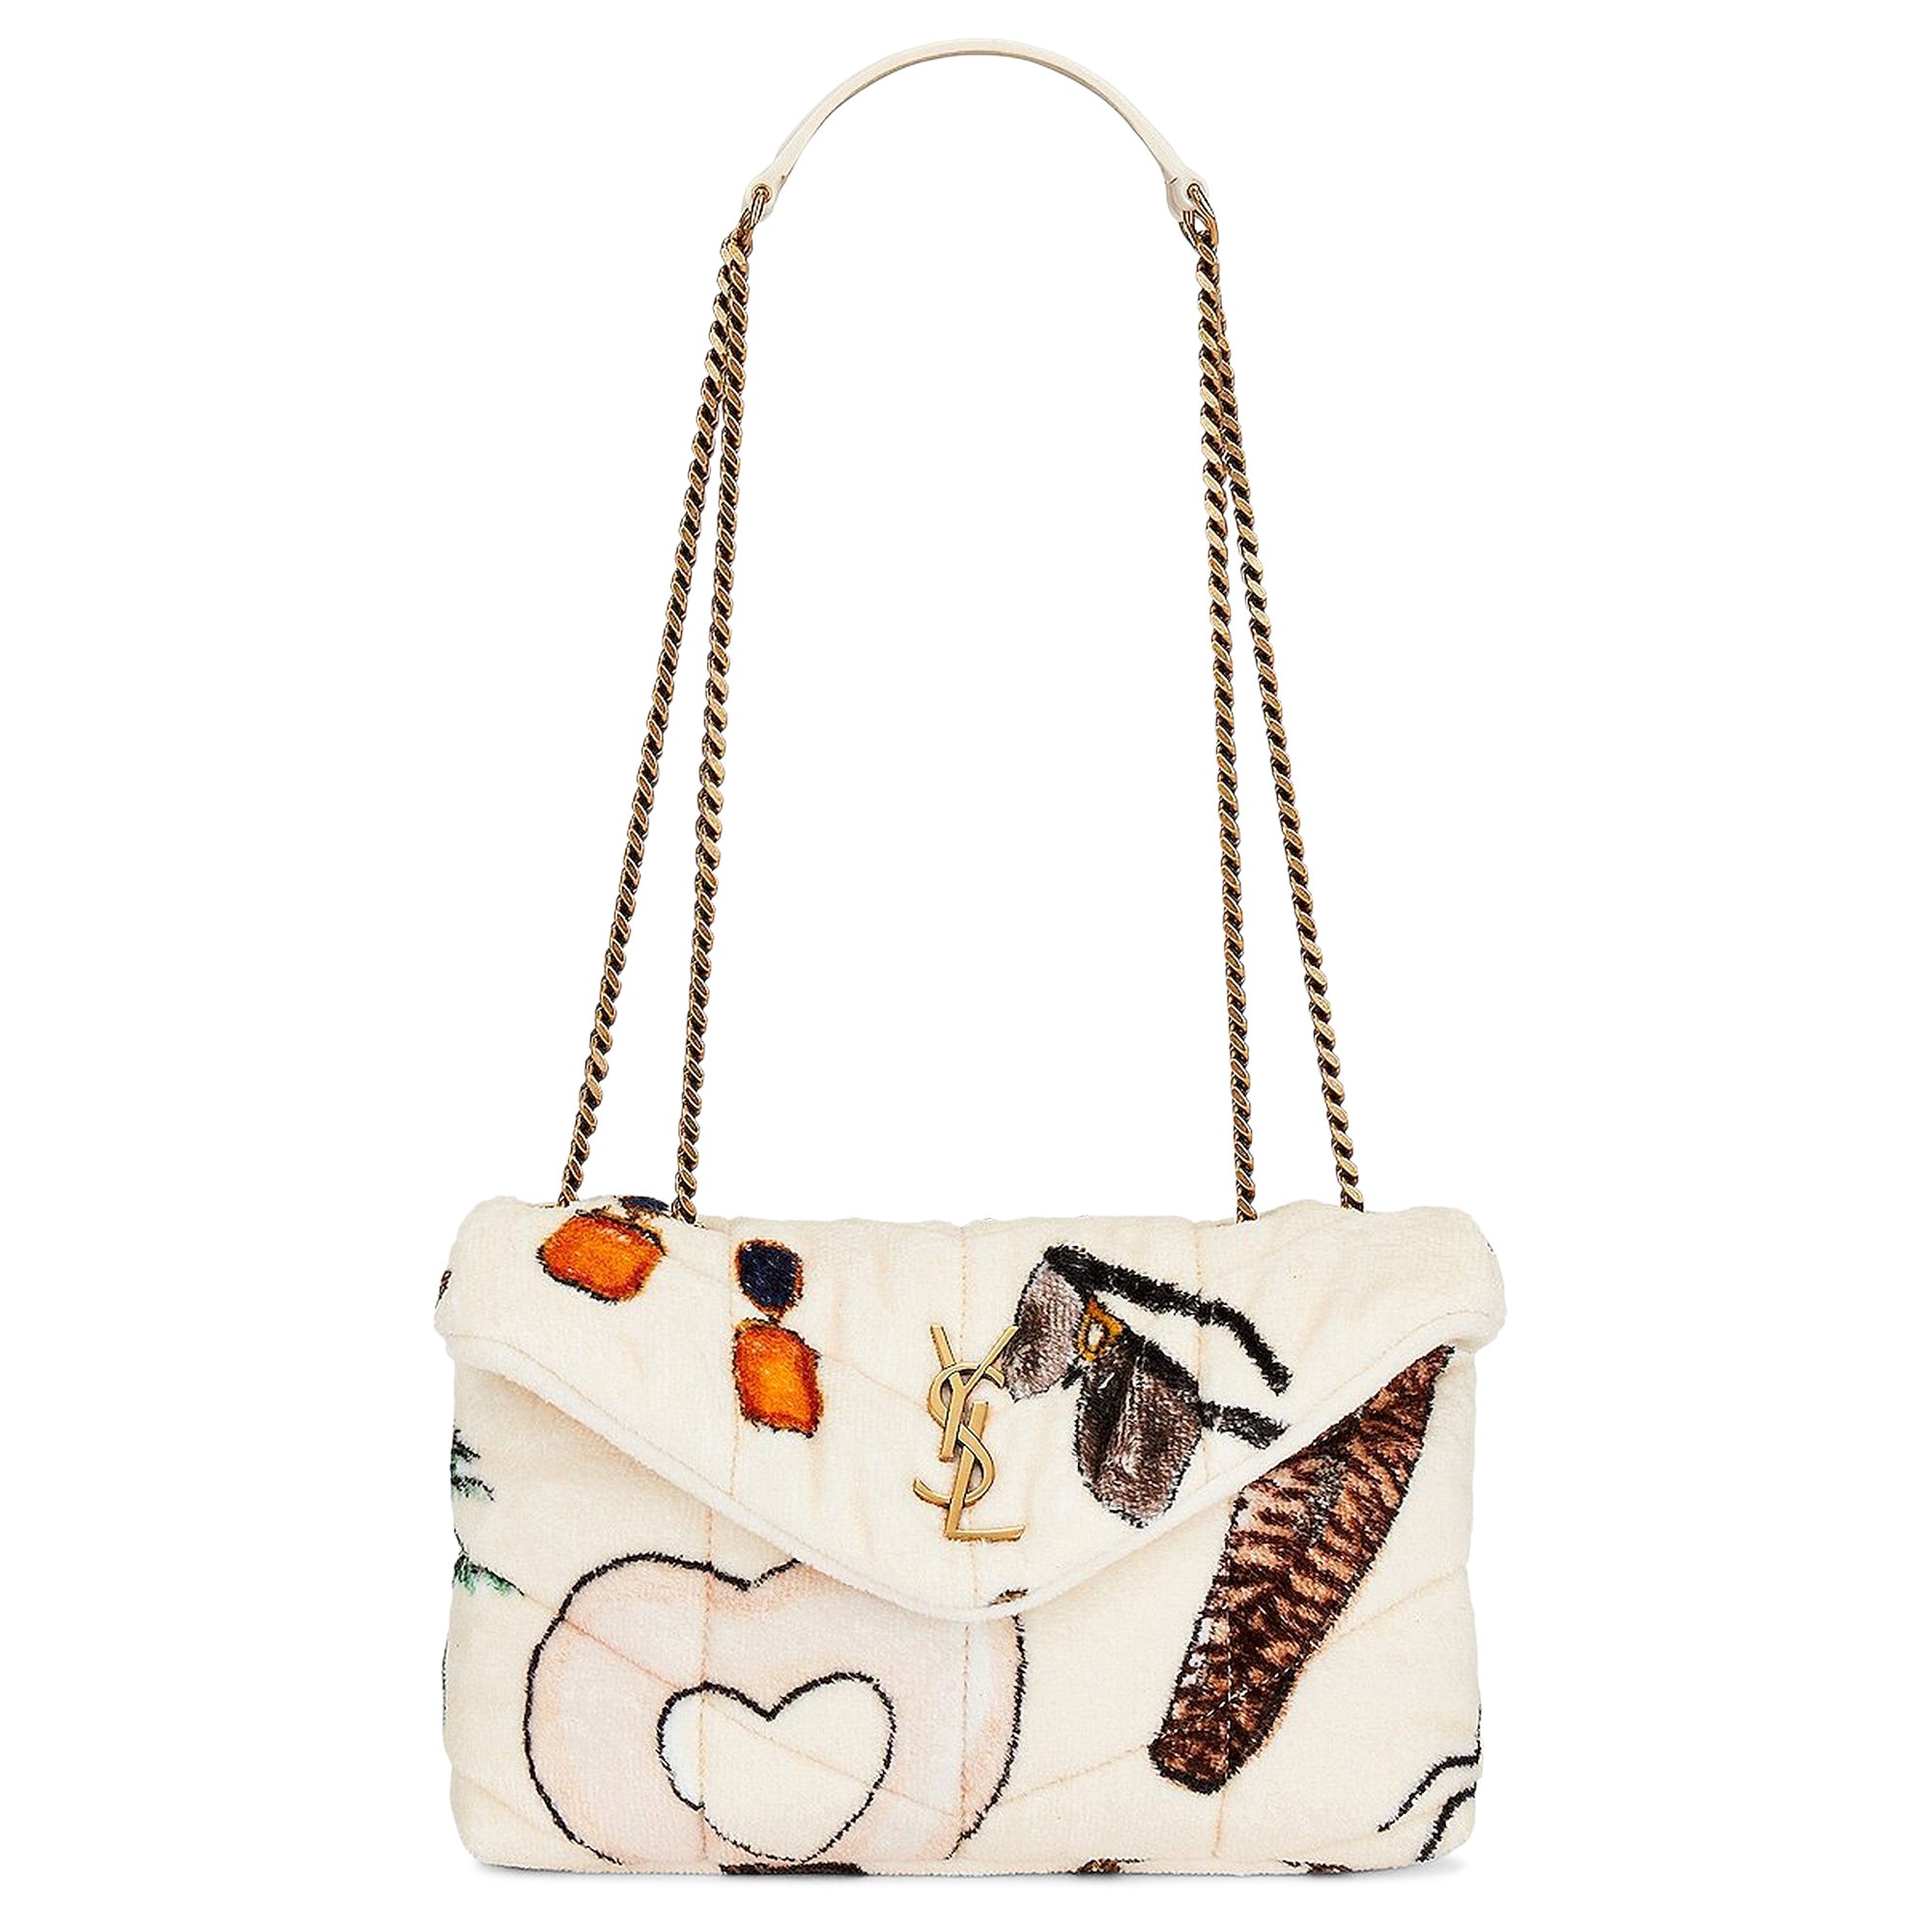 Buy Saint Laurent Toy Puffer Bag 'Pou White/Multicolor' - 747758 